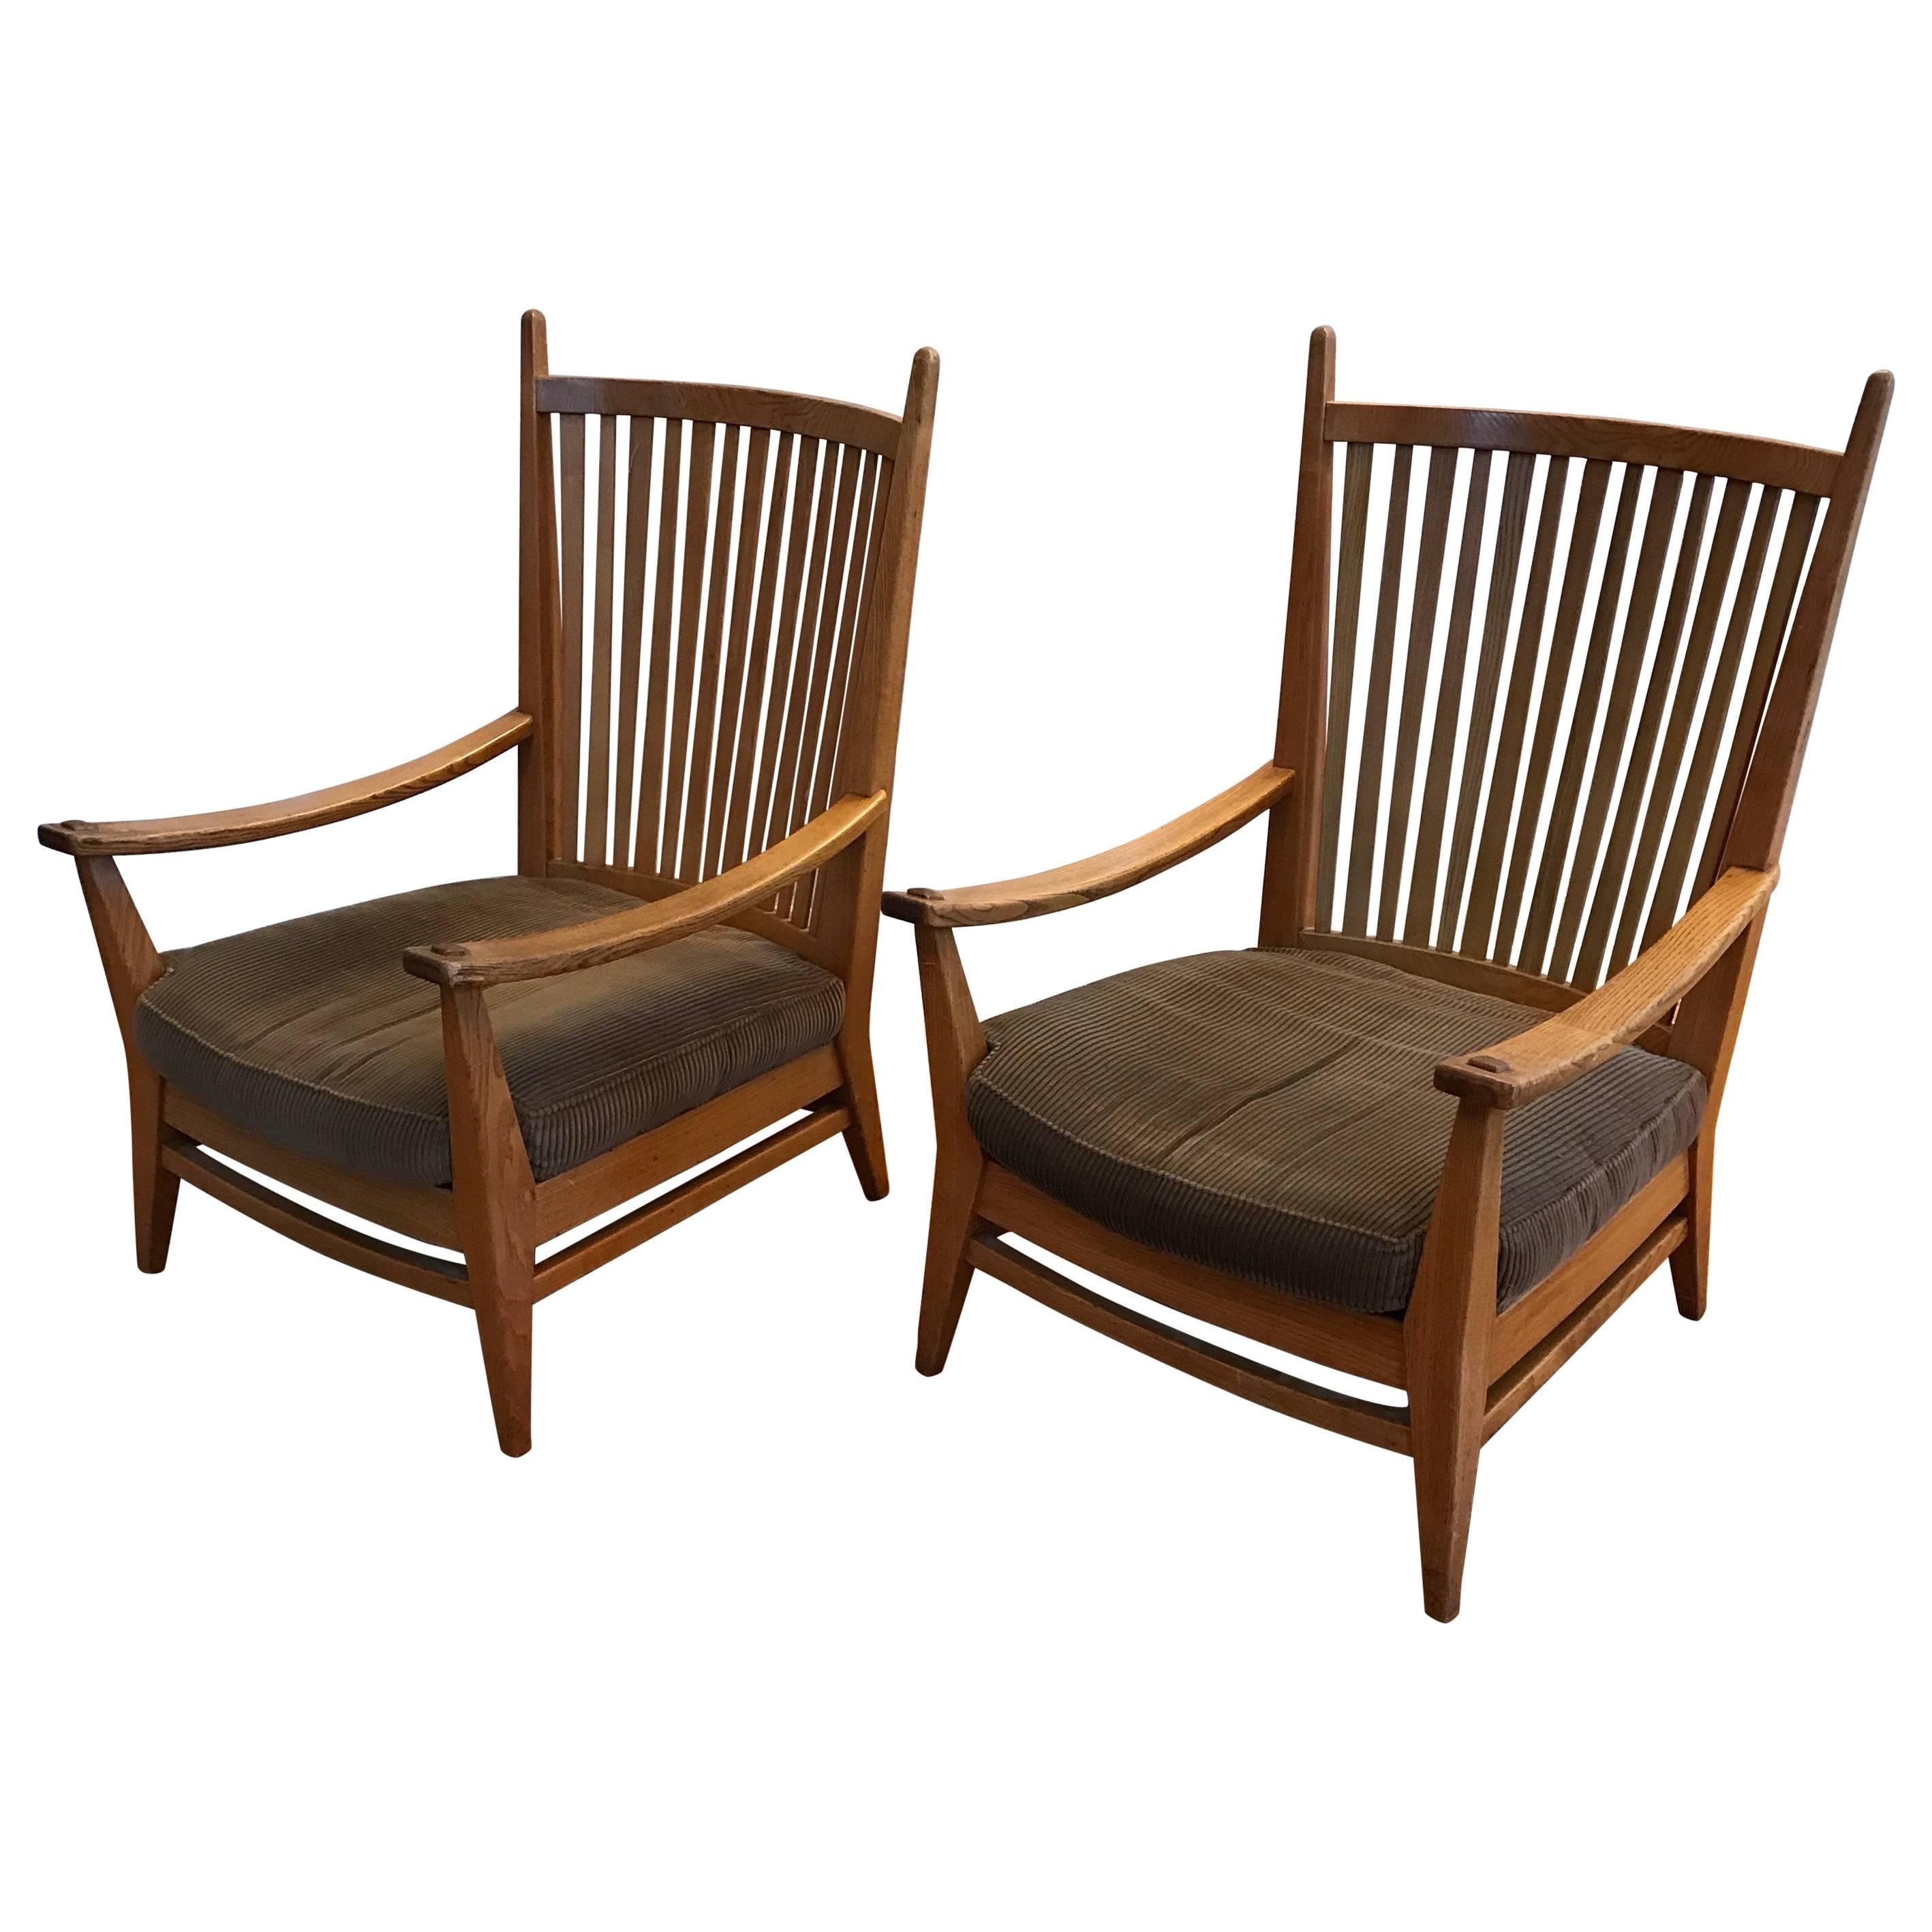 Design néerlandais Arts and Crafts, élégantes chaises de salon en chêne.

Ces chaises très élégantes sont fabriquées par l'icône du design néerlandais Bas Van Pelt et sont en excellent état. La structure en chêne fabriquée à la main et les dossiers